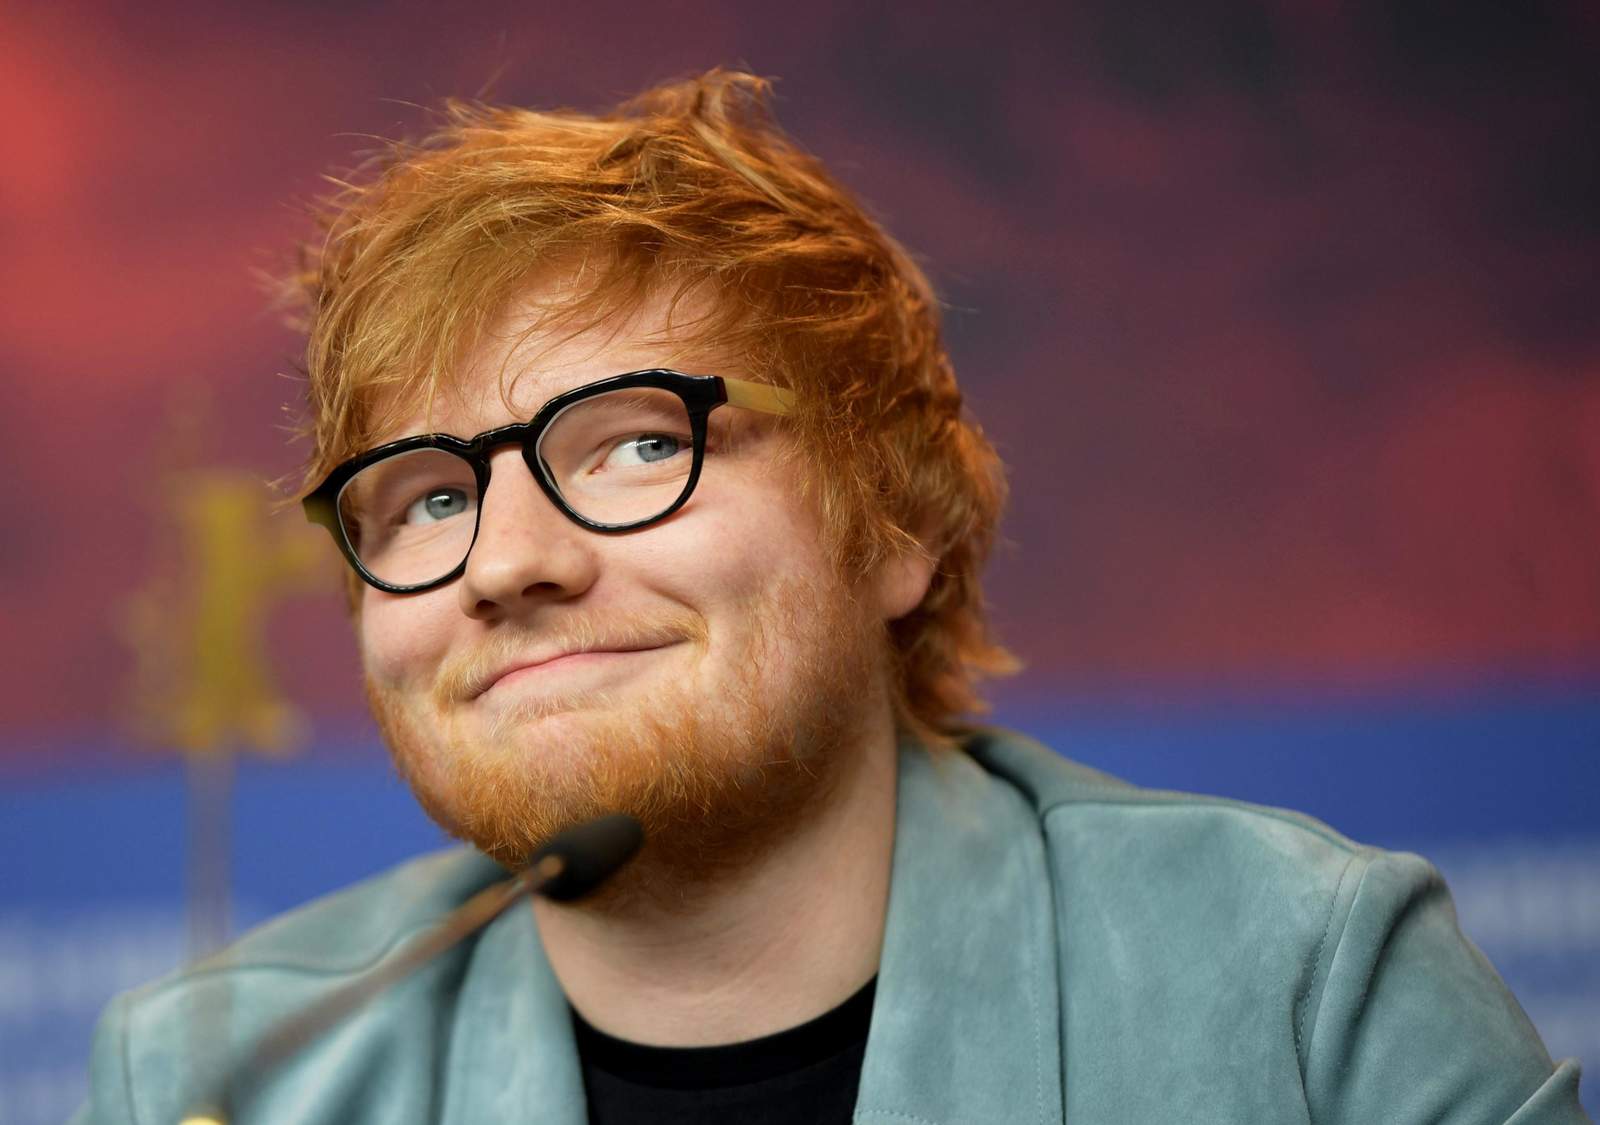 Resultados. El cantante Ed Sheeran, de 27 años, ha obtenido resultados favorables para su carrera en este año. (ARCHIVO)